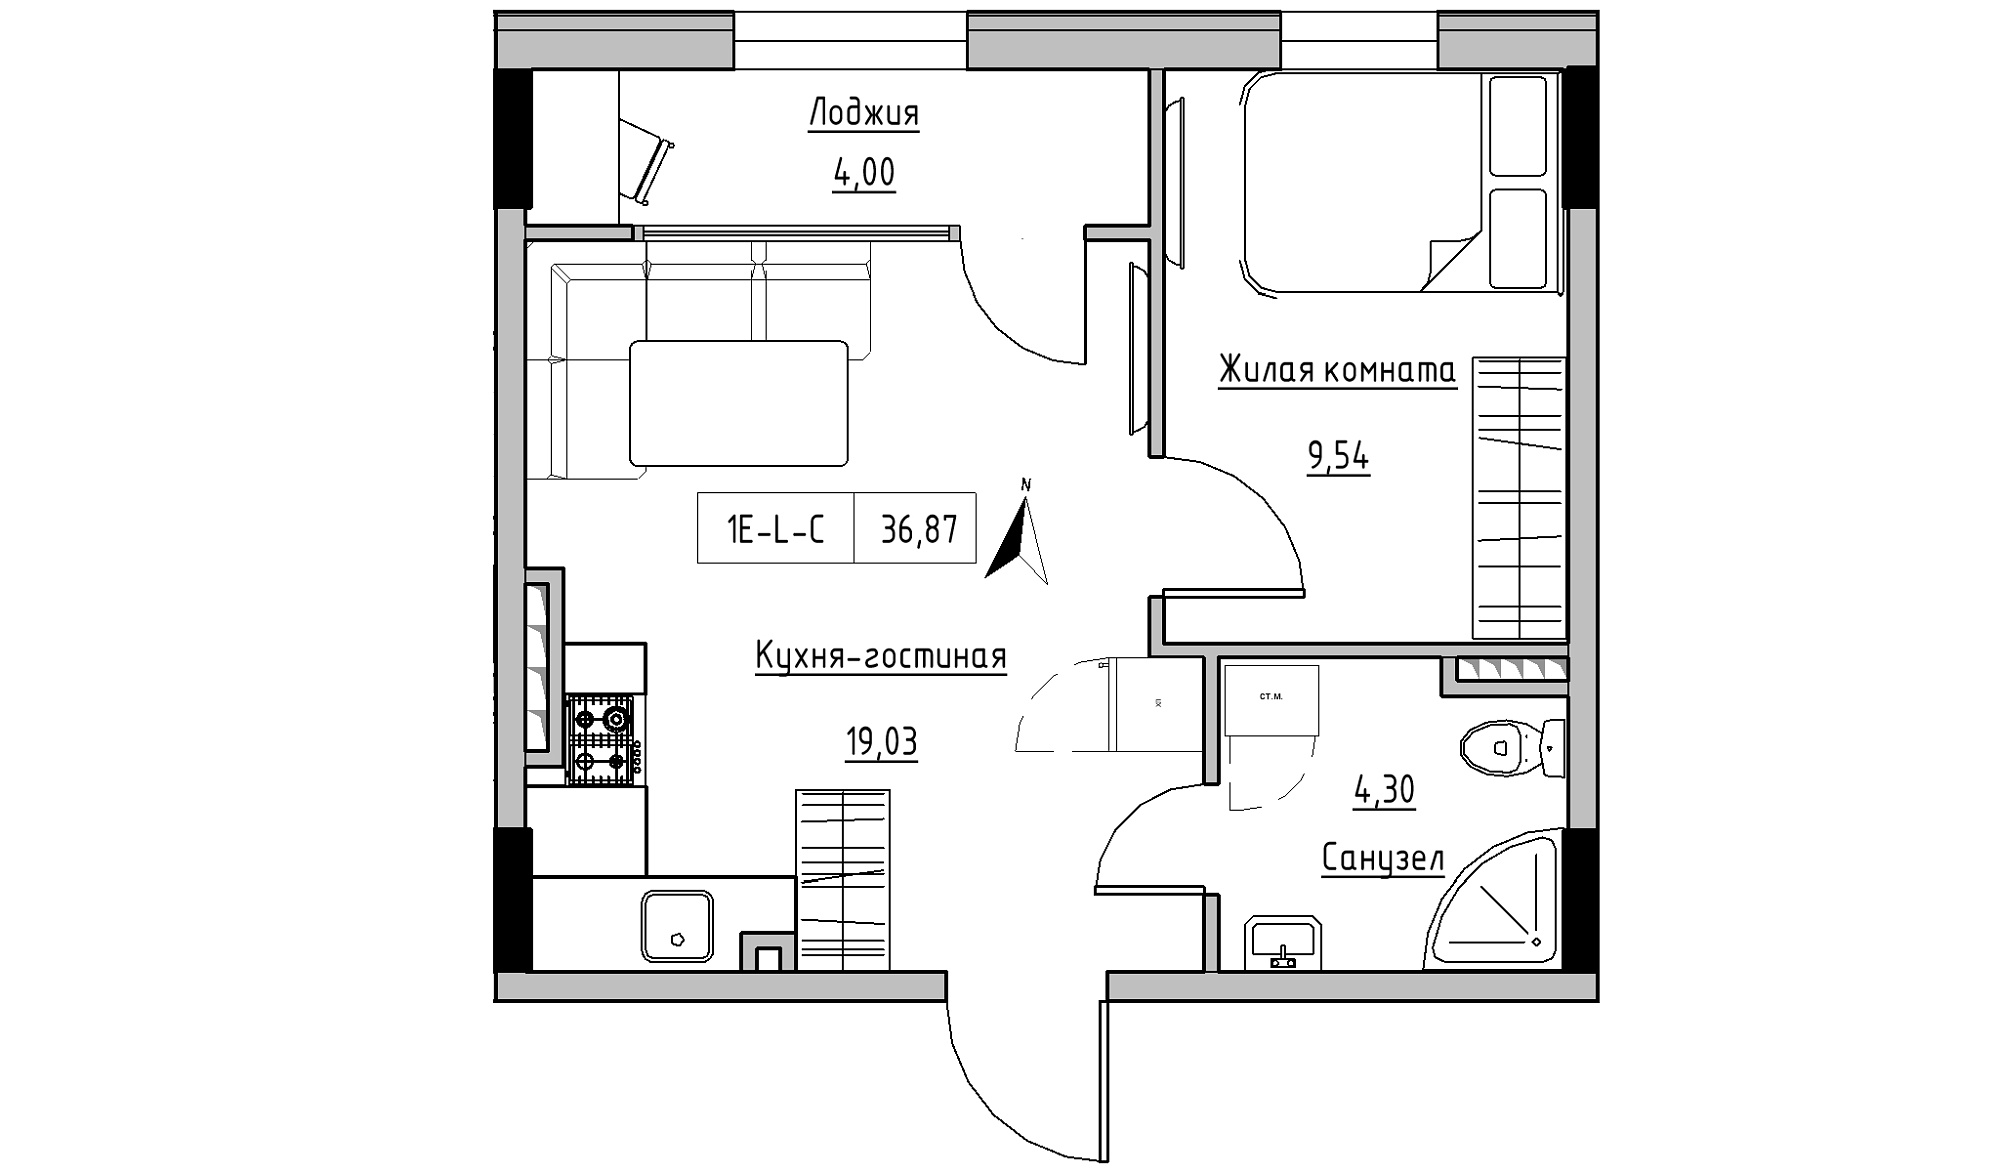 Планування 1-к квартира площею 36.87м2, KS-025-04/0008.